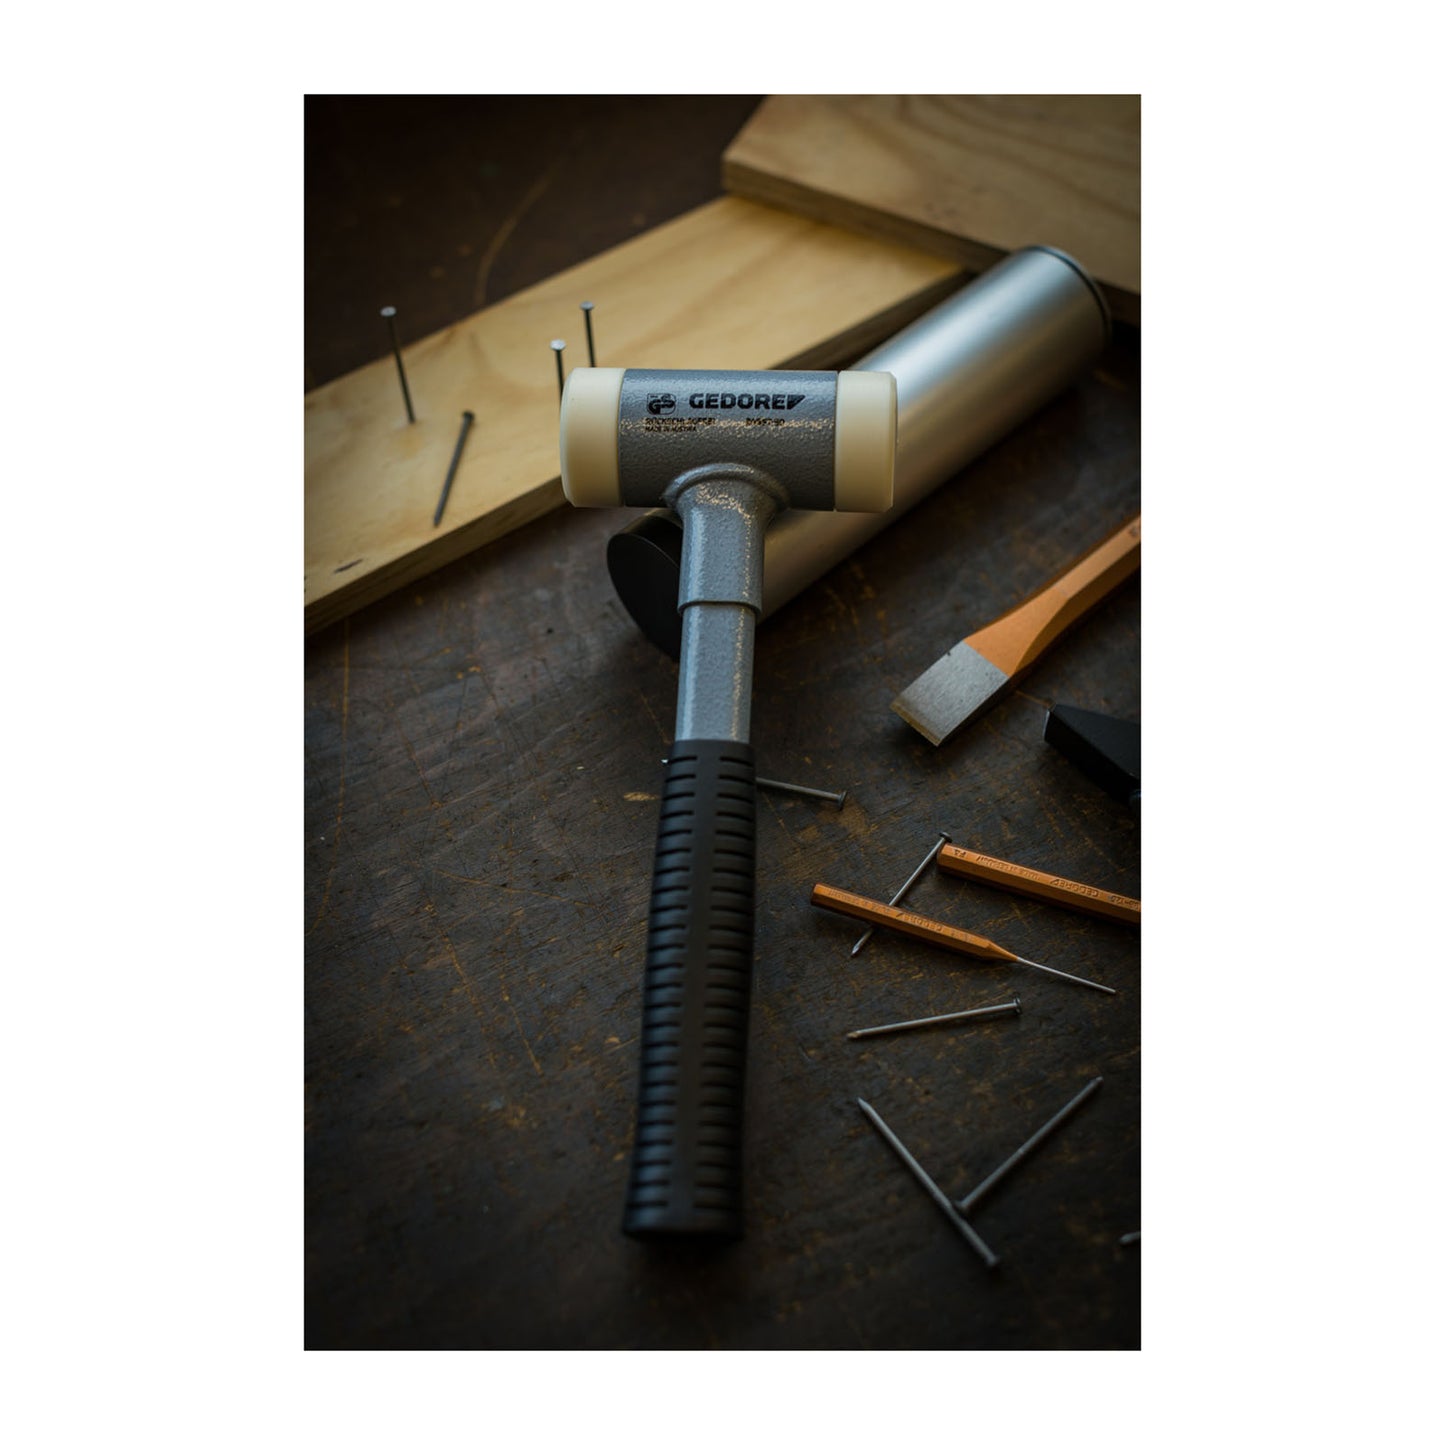 GEDORE 248 ST-40 - Anti-rebound hammer 40 mm (8829170)